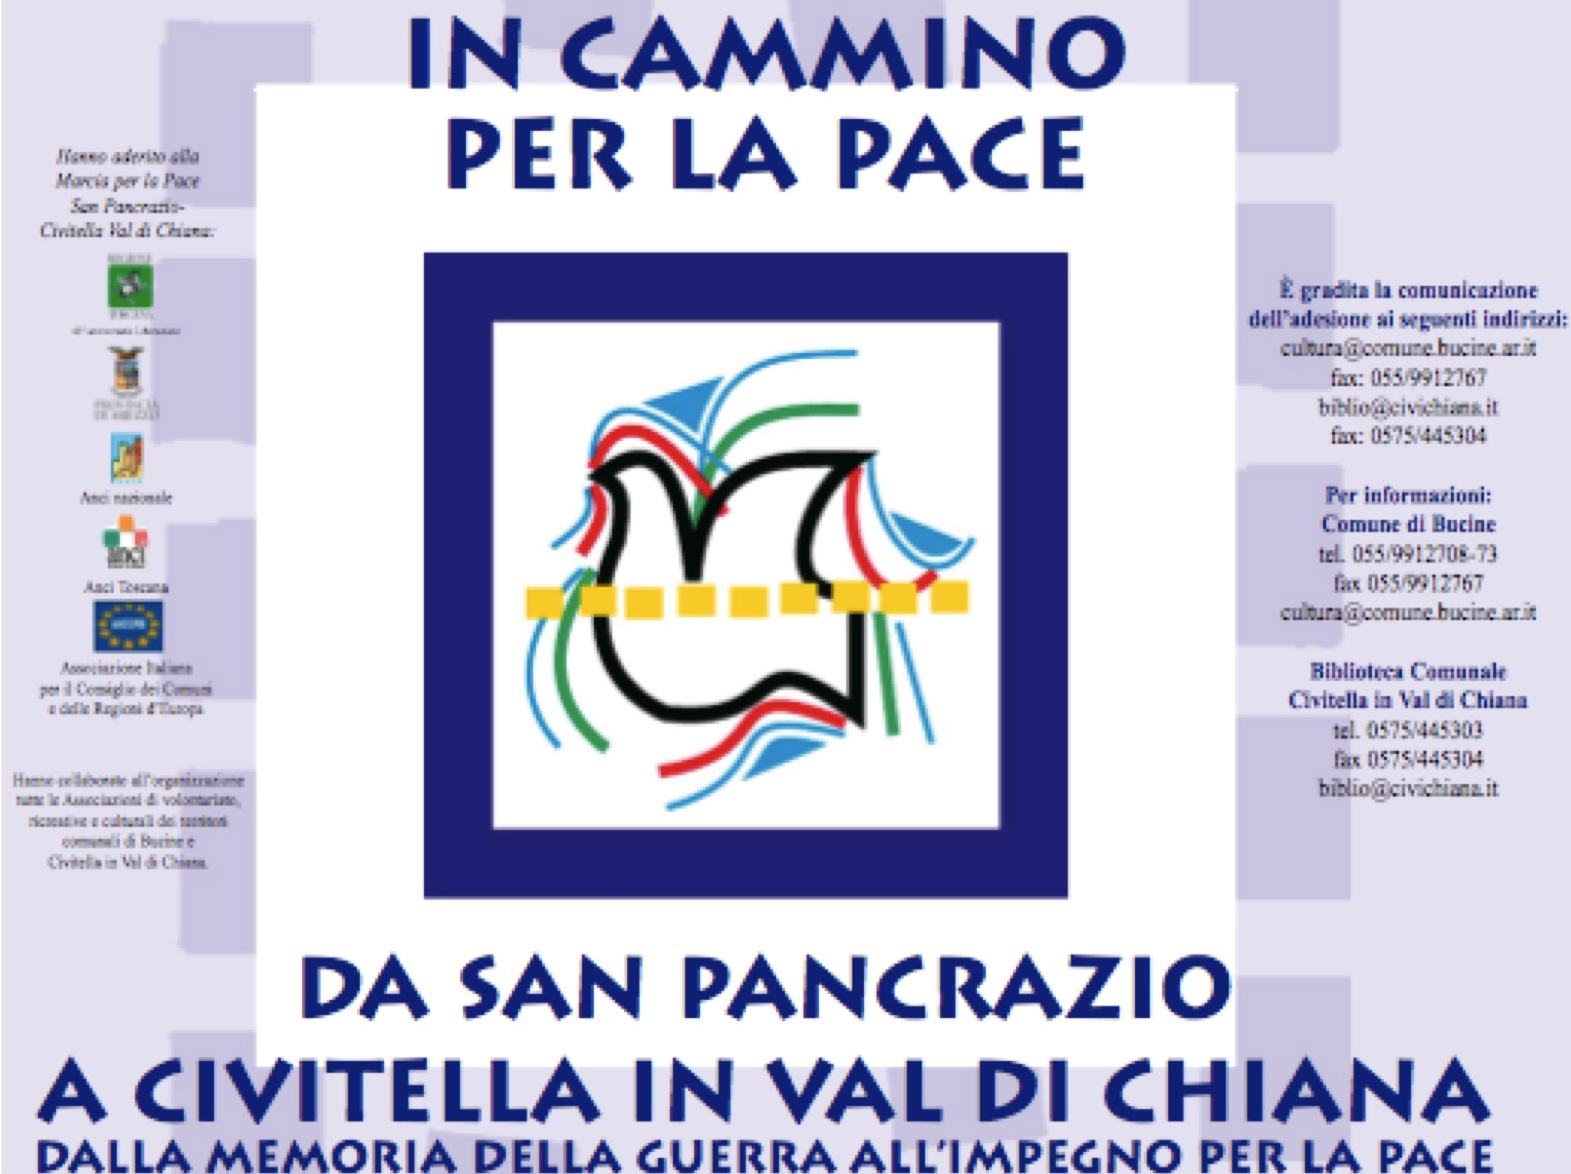 Oggi in cammino per la pace da San Pancrazio a Civitella in Val di Chiana